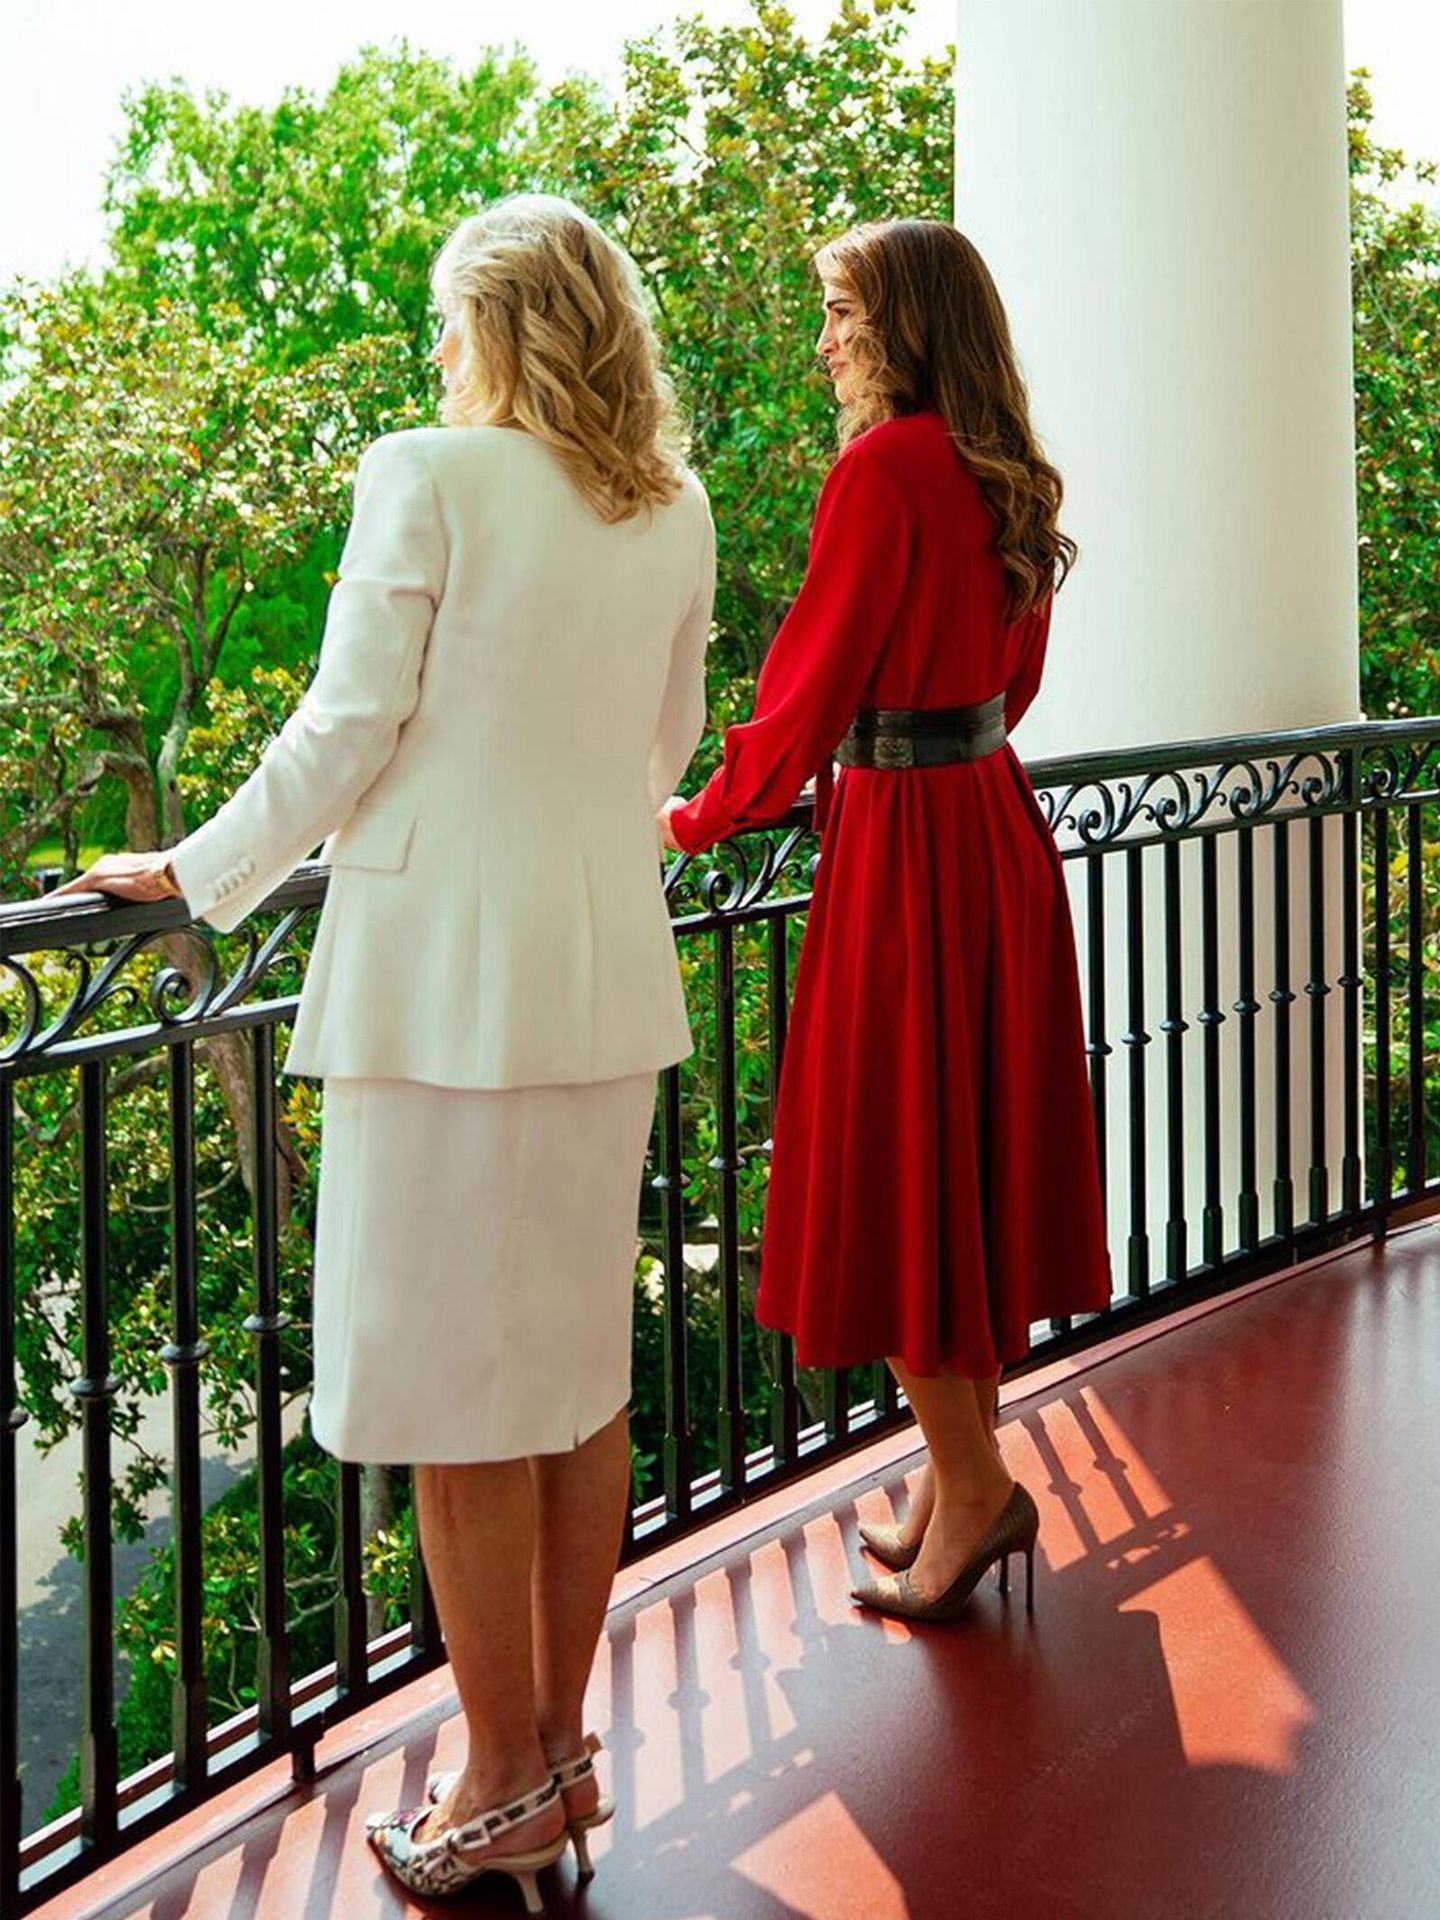 Rania de Jordania y Jill Biden, durante su encuentro en la Casa Blanca. (Instagram @queenrania)